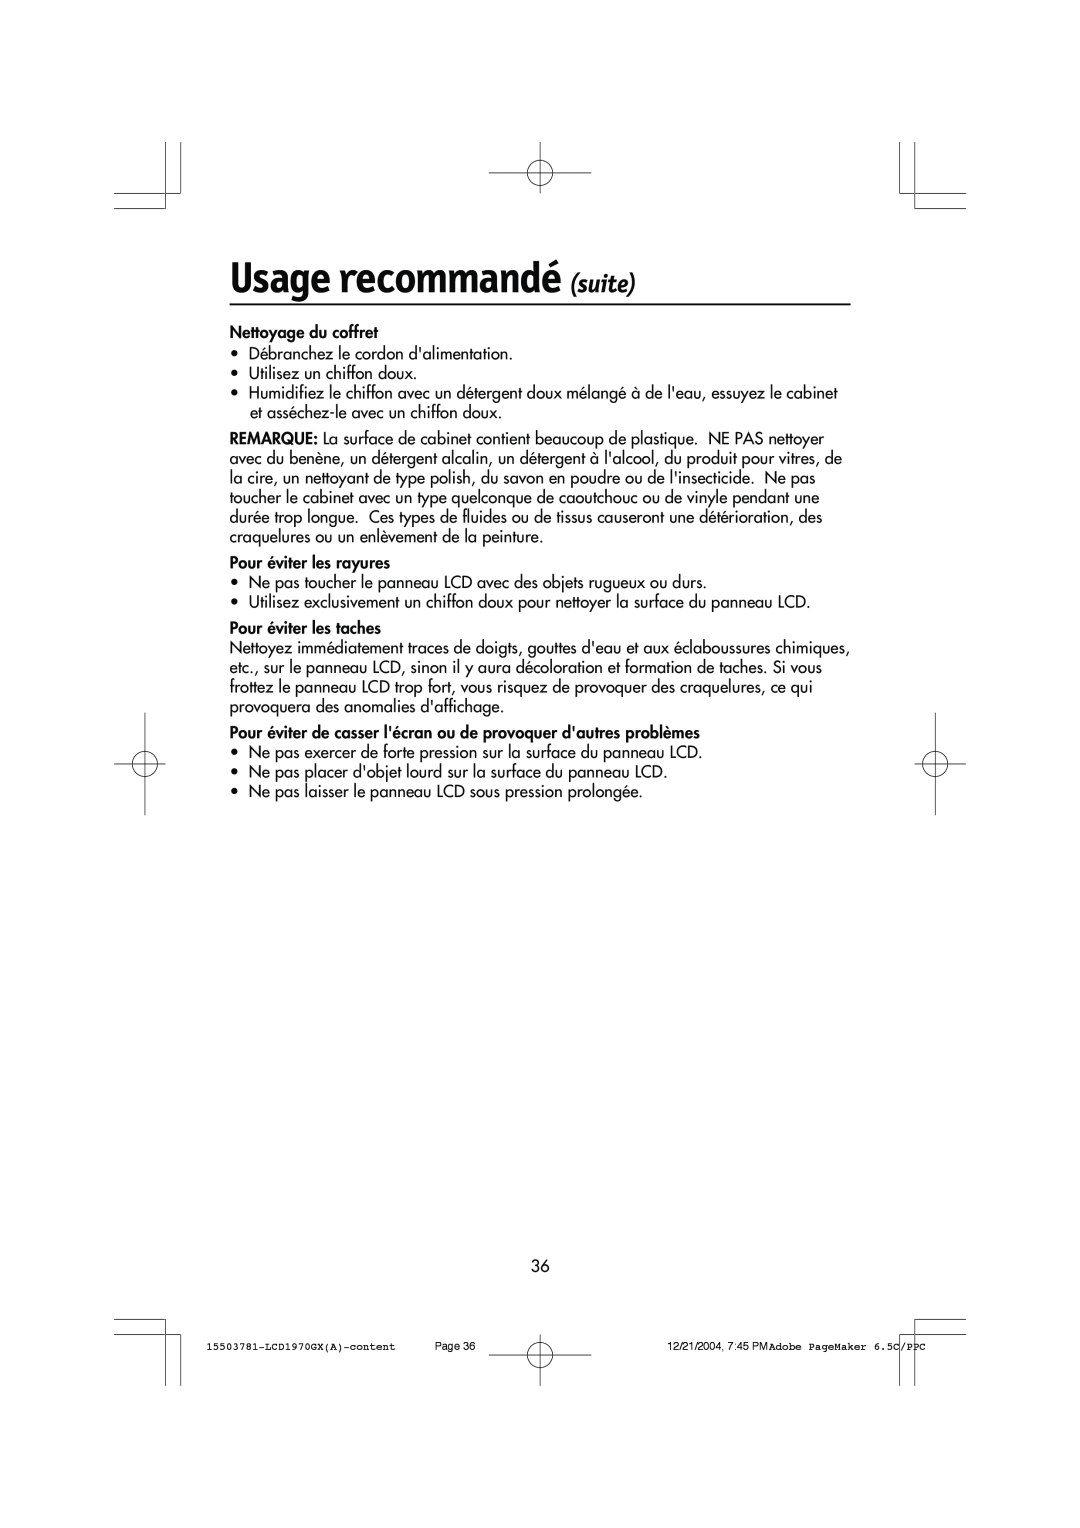 NEC LCD1970GX user manual Usage recommandé suite, Nettoyage du coffret 